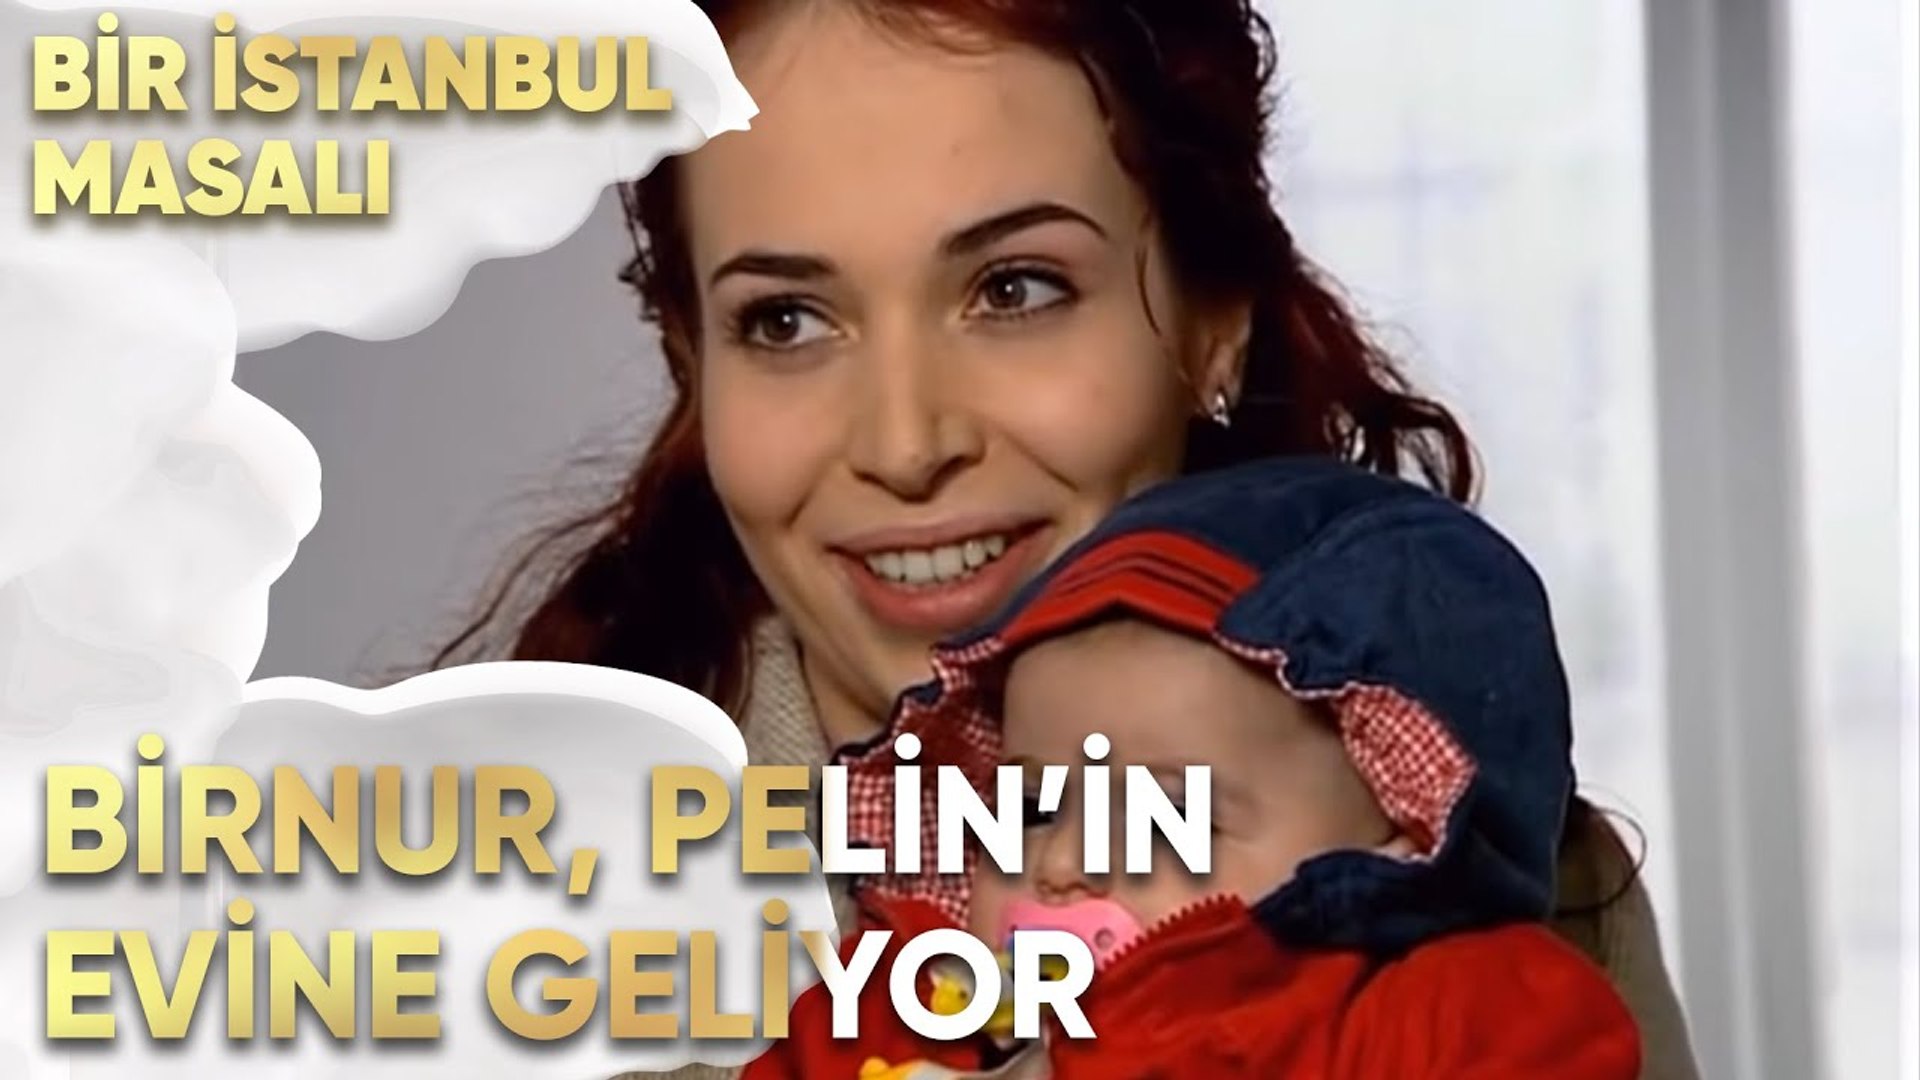 birnur pelin in evine geliyor bir istanbul masali 51 bolum video dailymotion